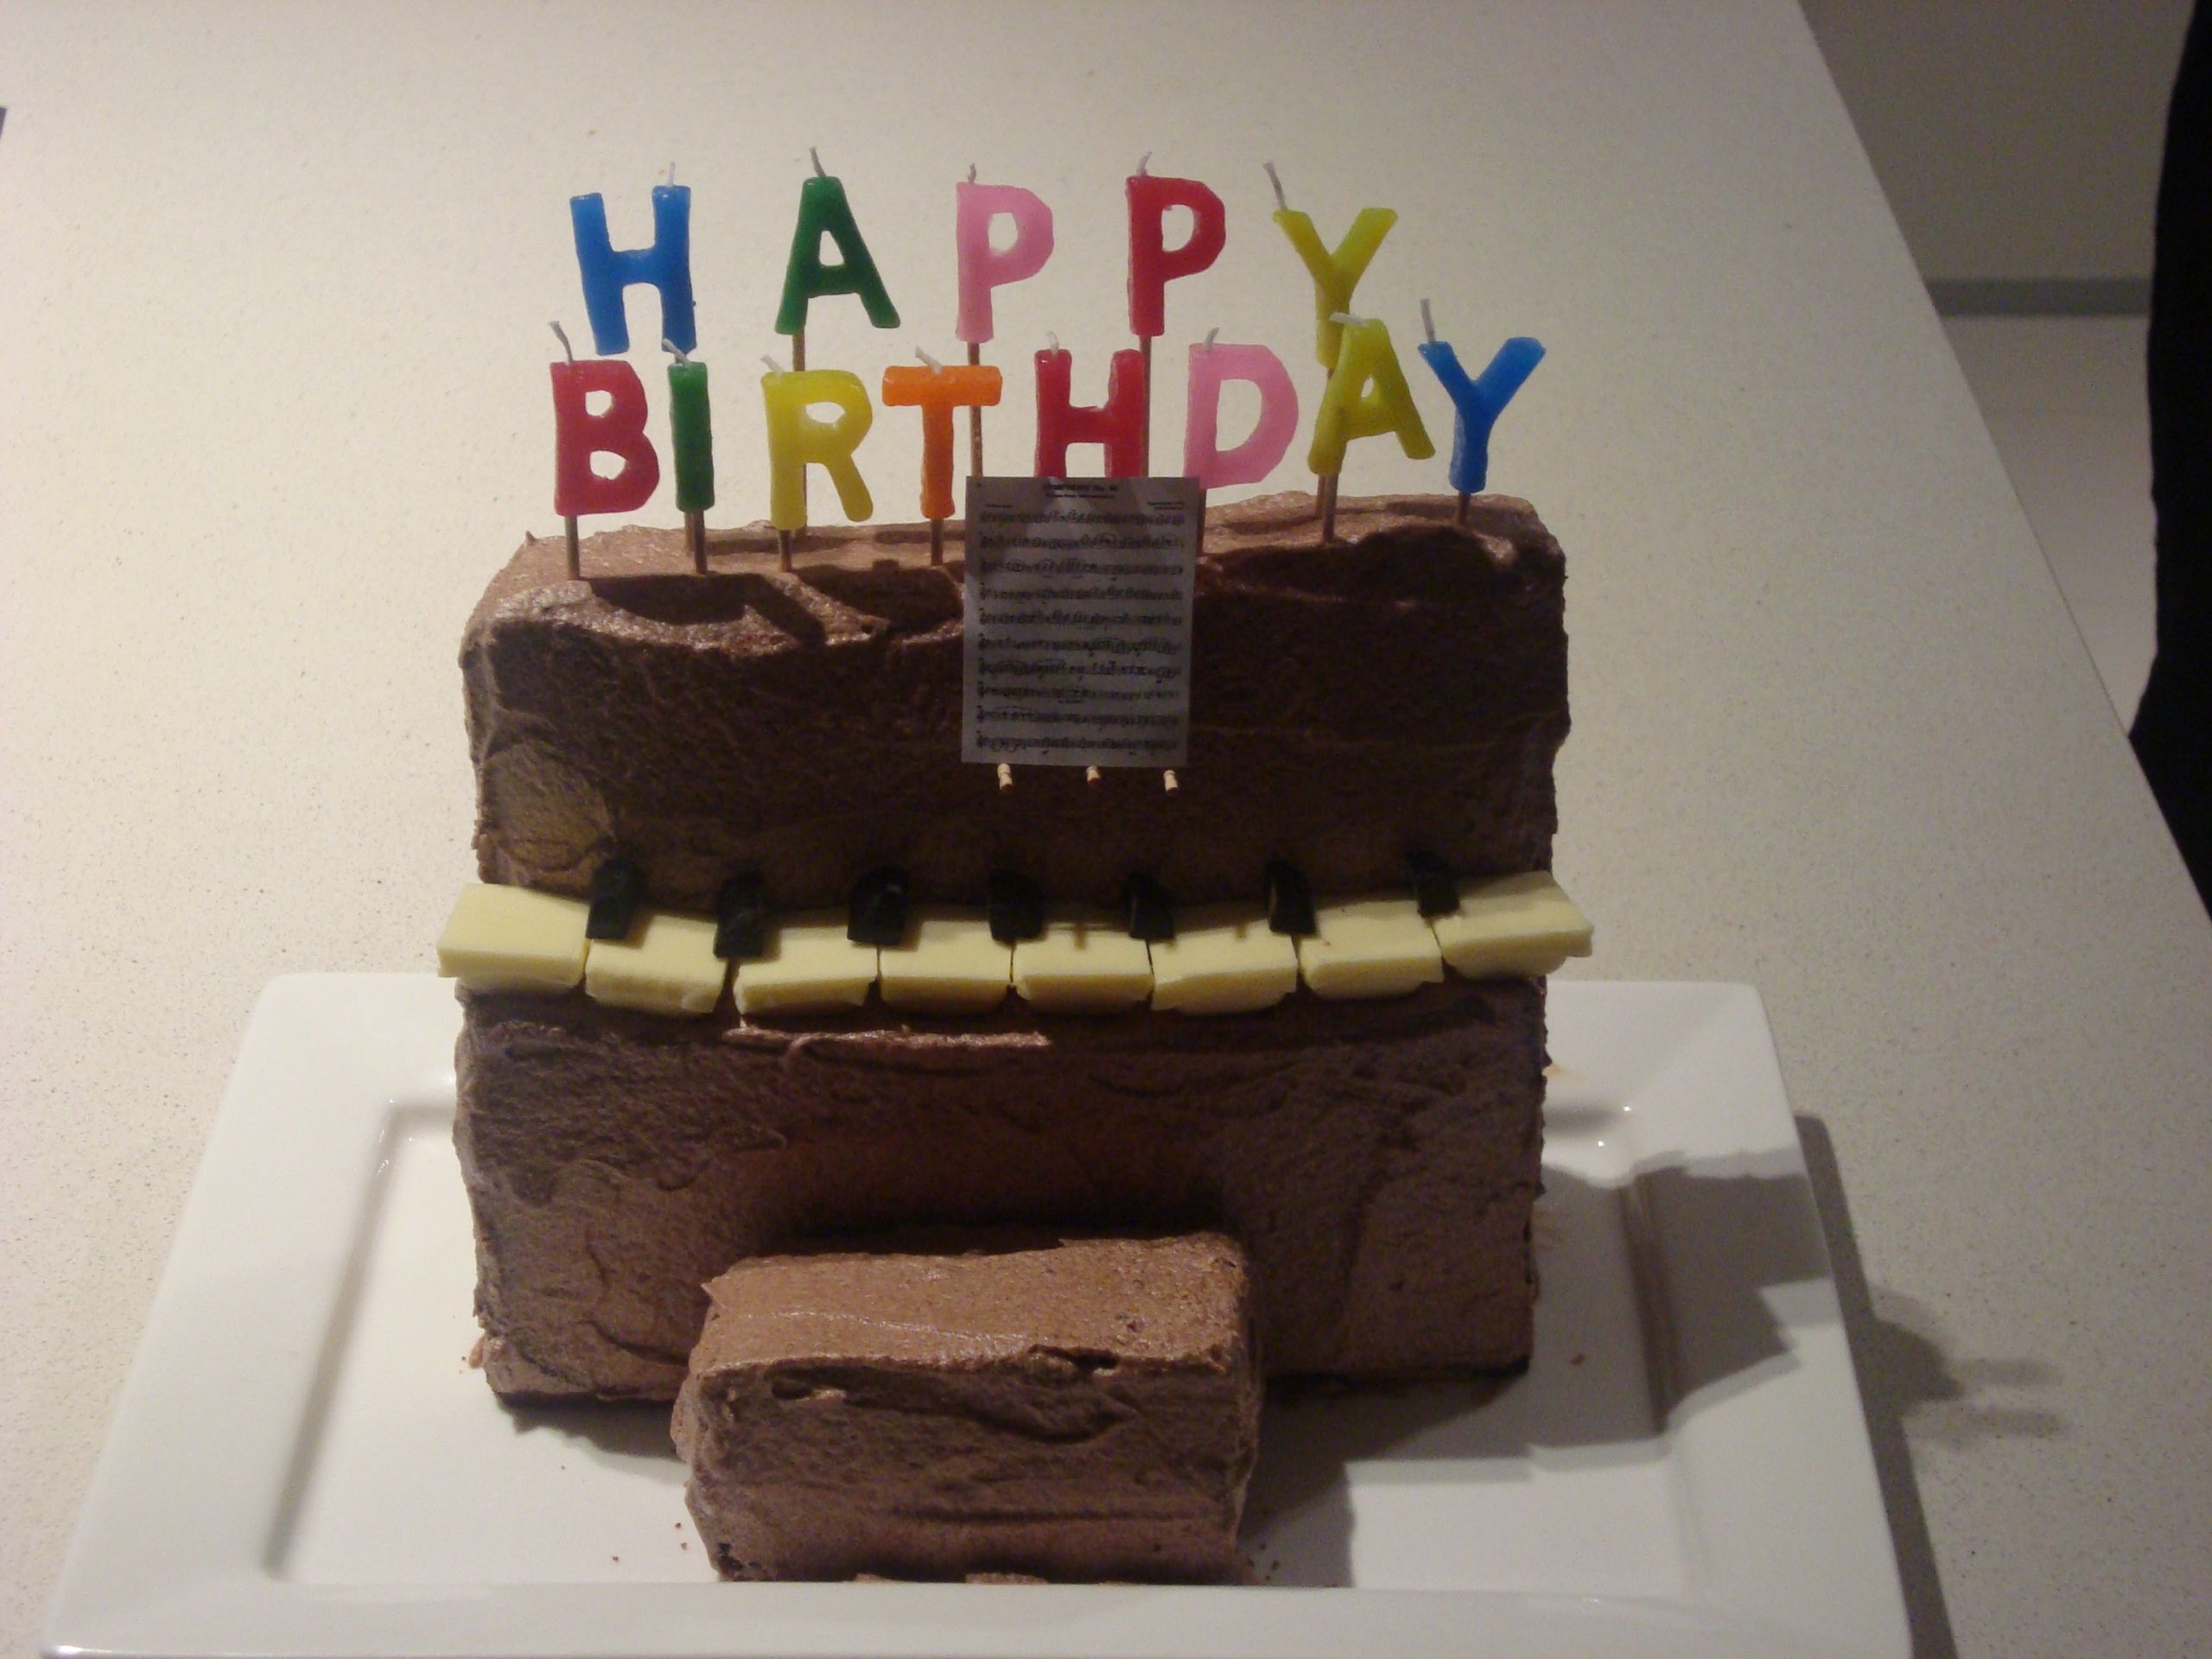 Piano Birthday Cake
 Piano birthday cake